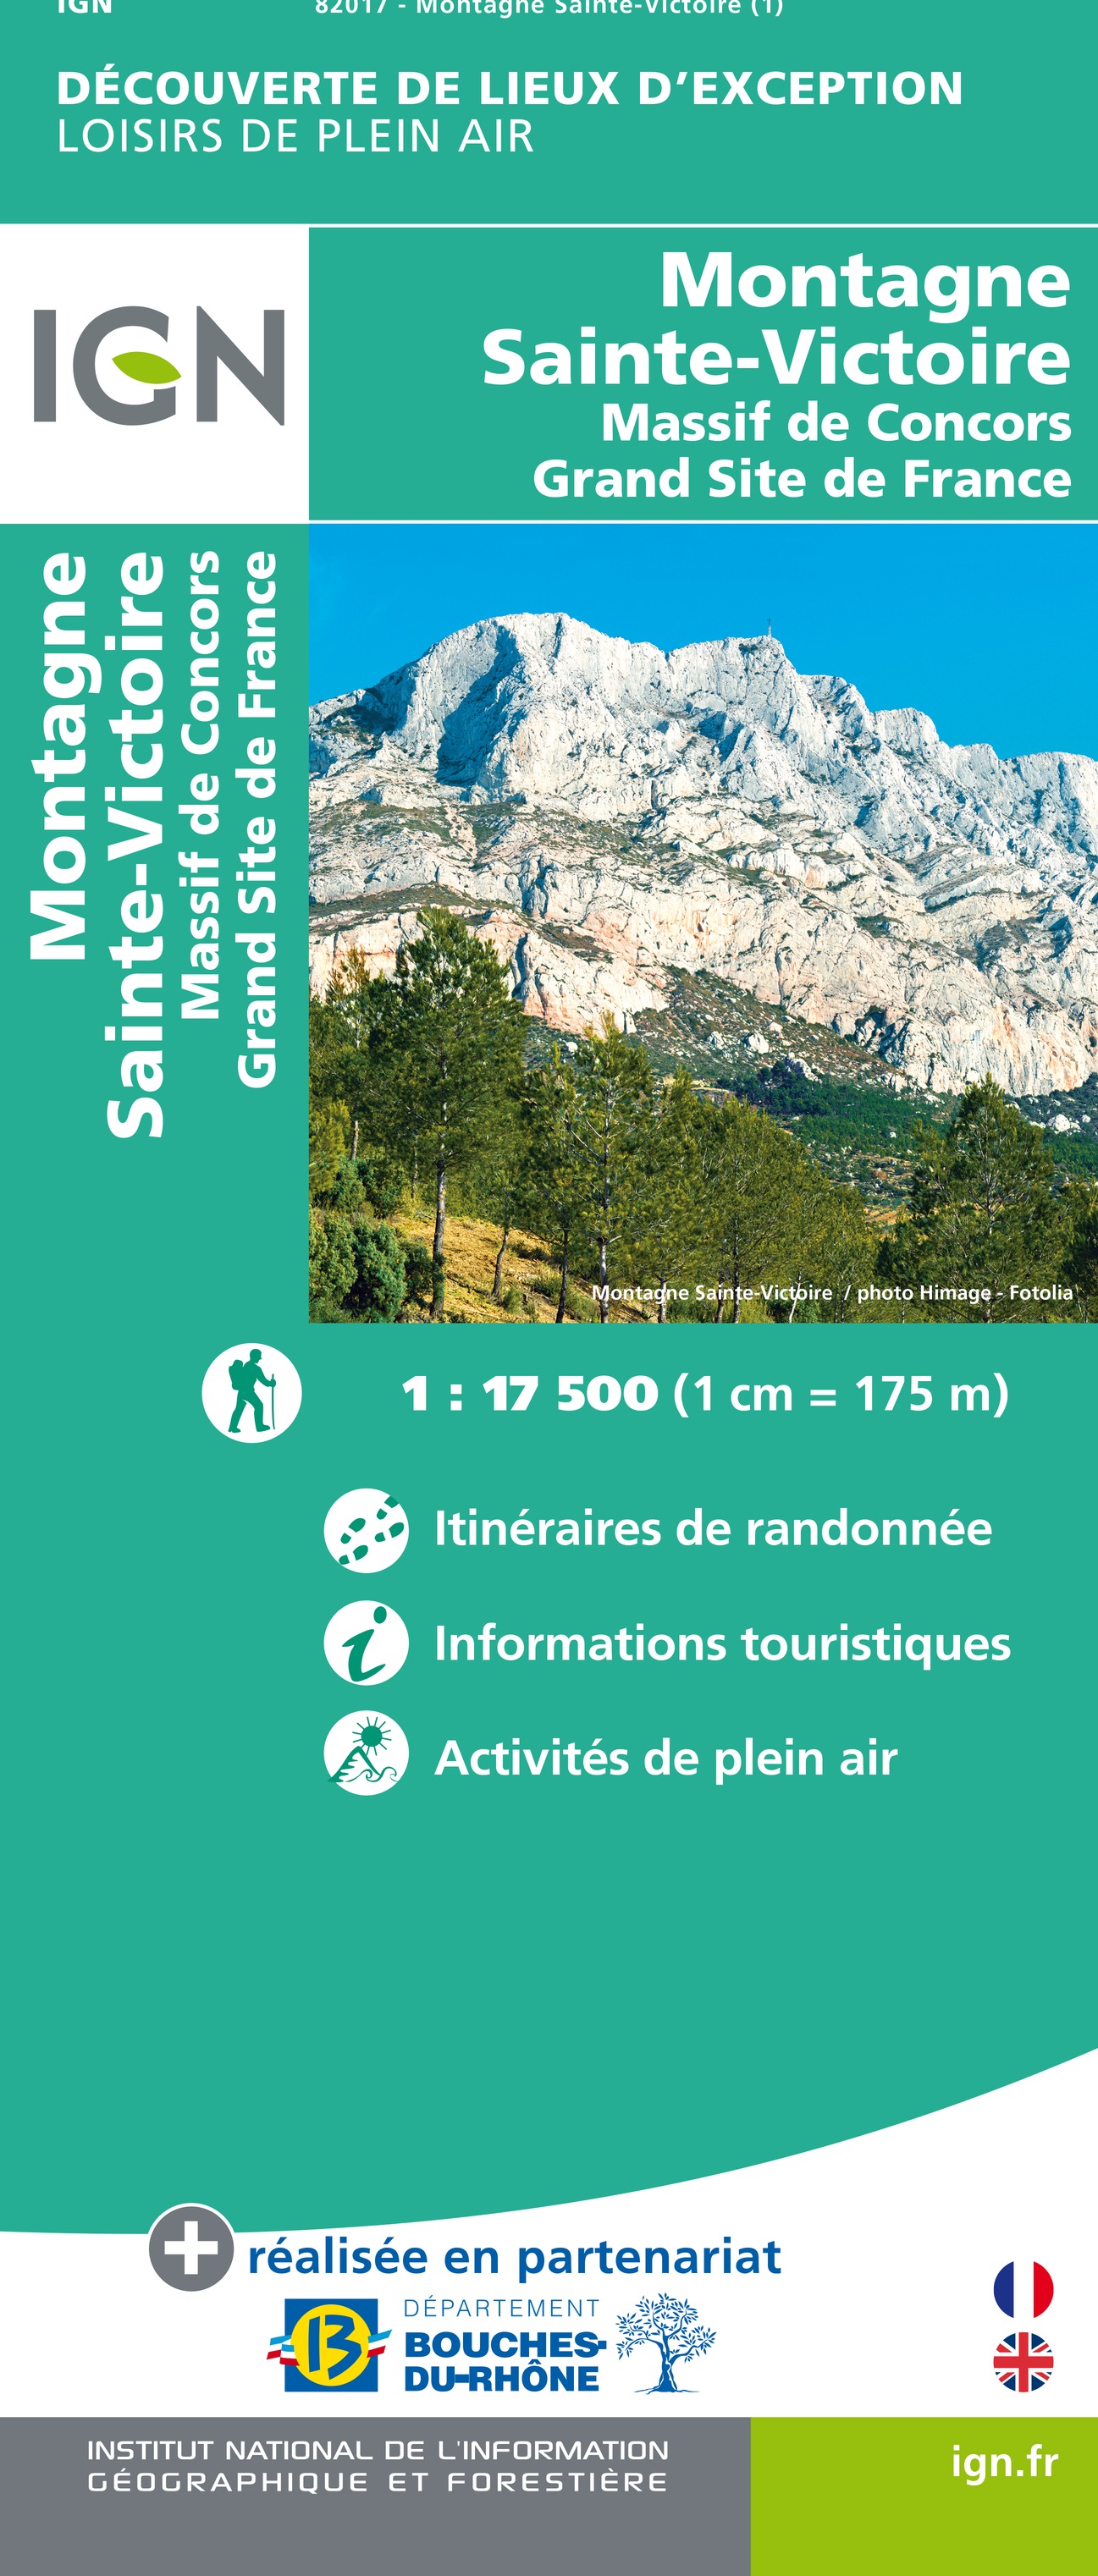 Online bestellen: Wandelkaart 82017 Découvere de Lieux d'Exception Montagne Sainte-Victoire | IGN - Institut Géographique National